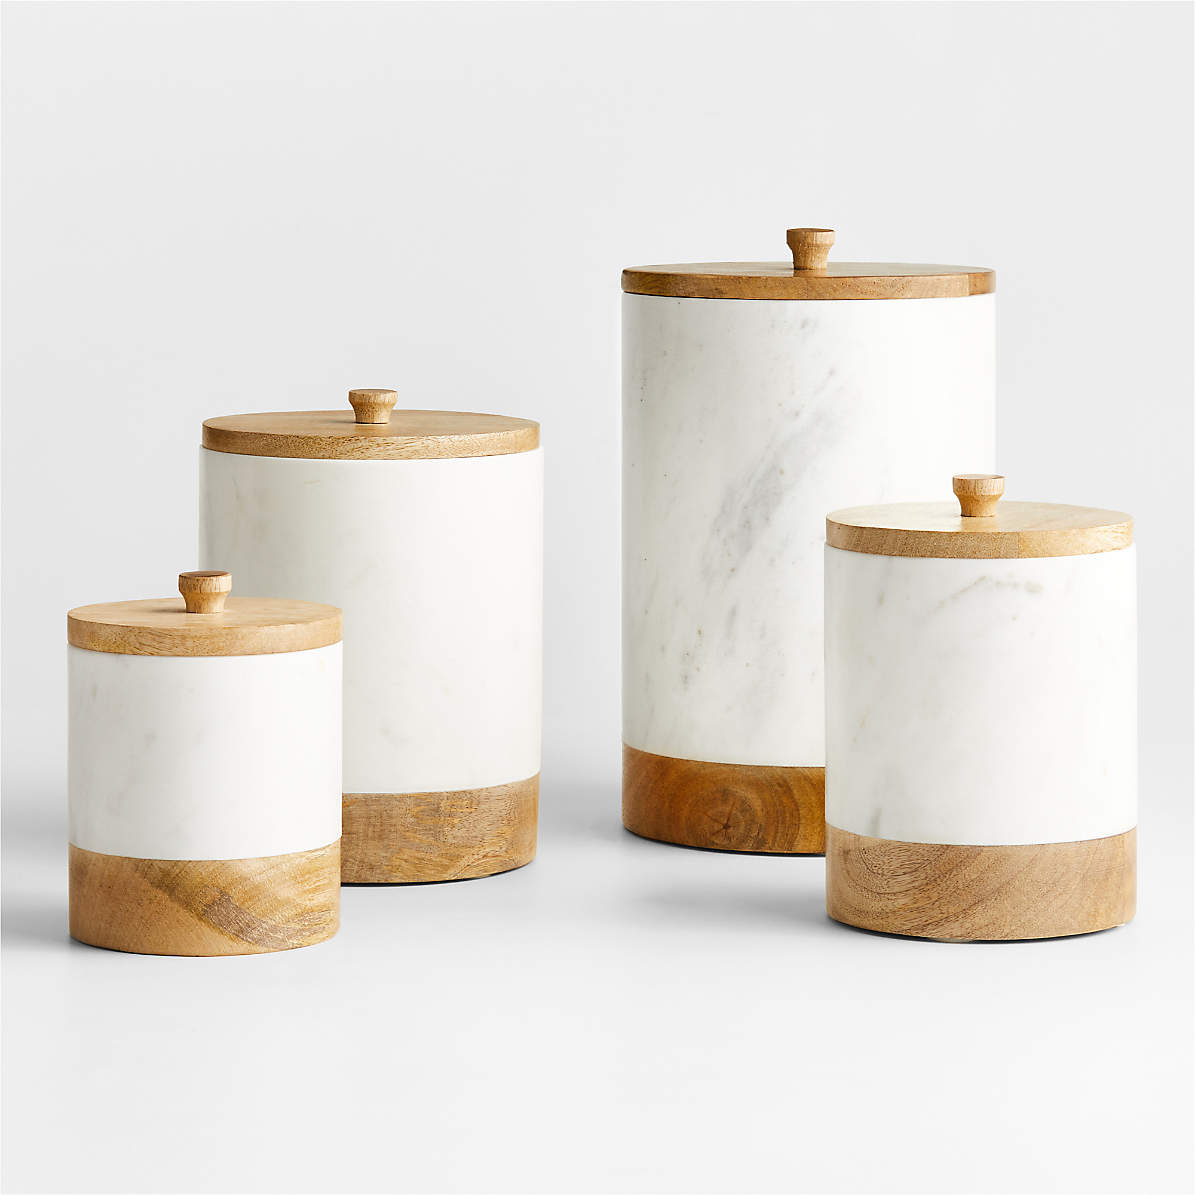 Set of Bamboo Wood Kitchen Cooking Utensils in White Ceramic Jar